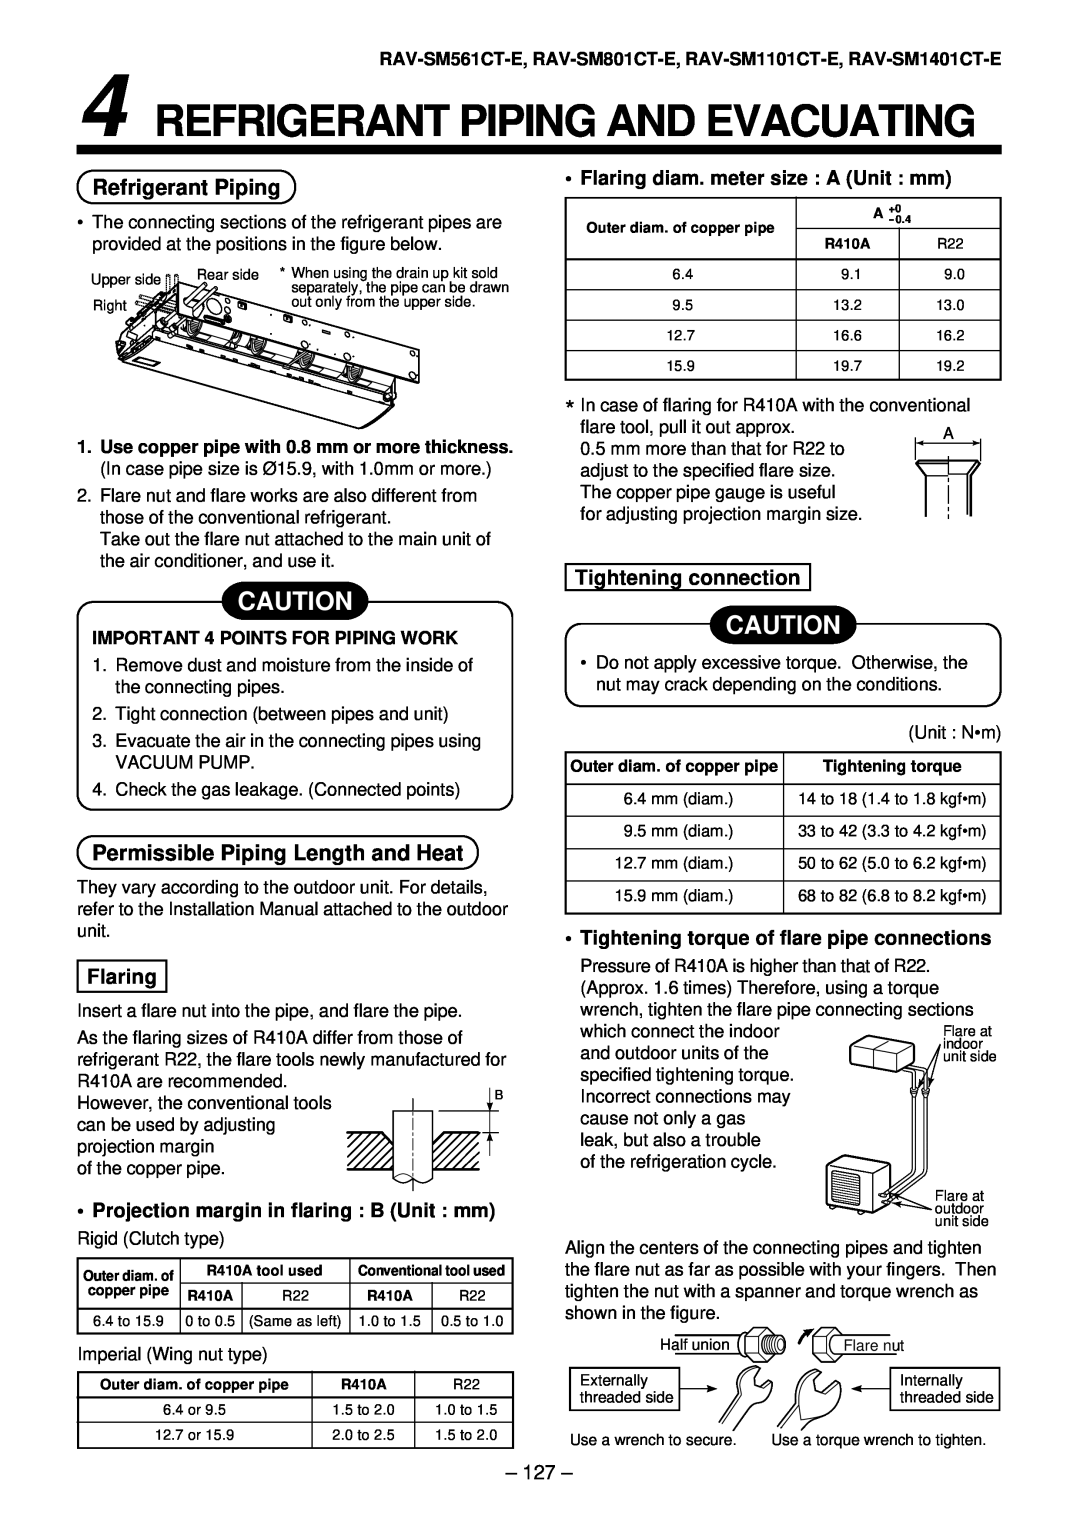 Toshiba RAV-SM561AT-E, RAV-SM1101AT-E Refrigerant Piping And Evacuating, Permissible Piping Length and Heat, Flaring 